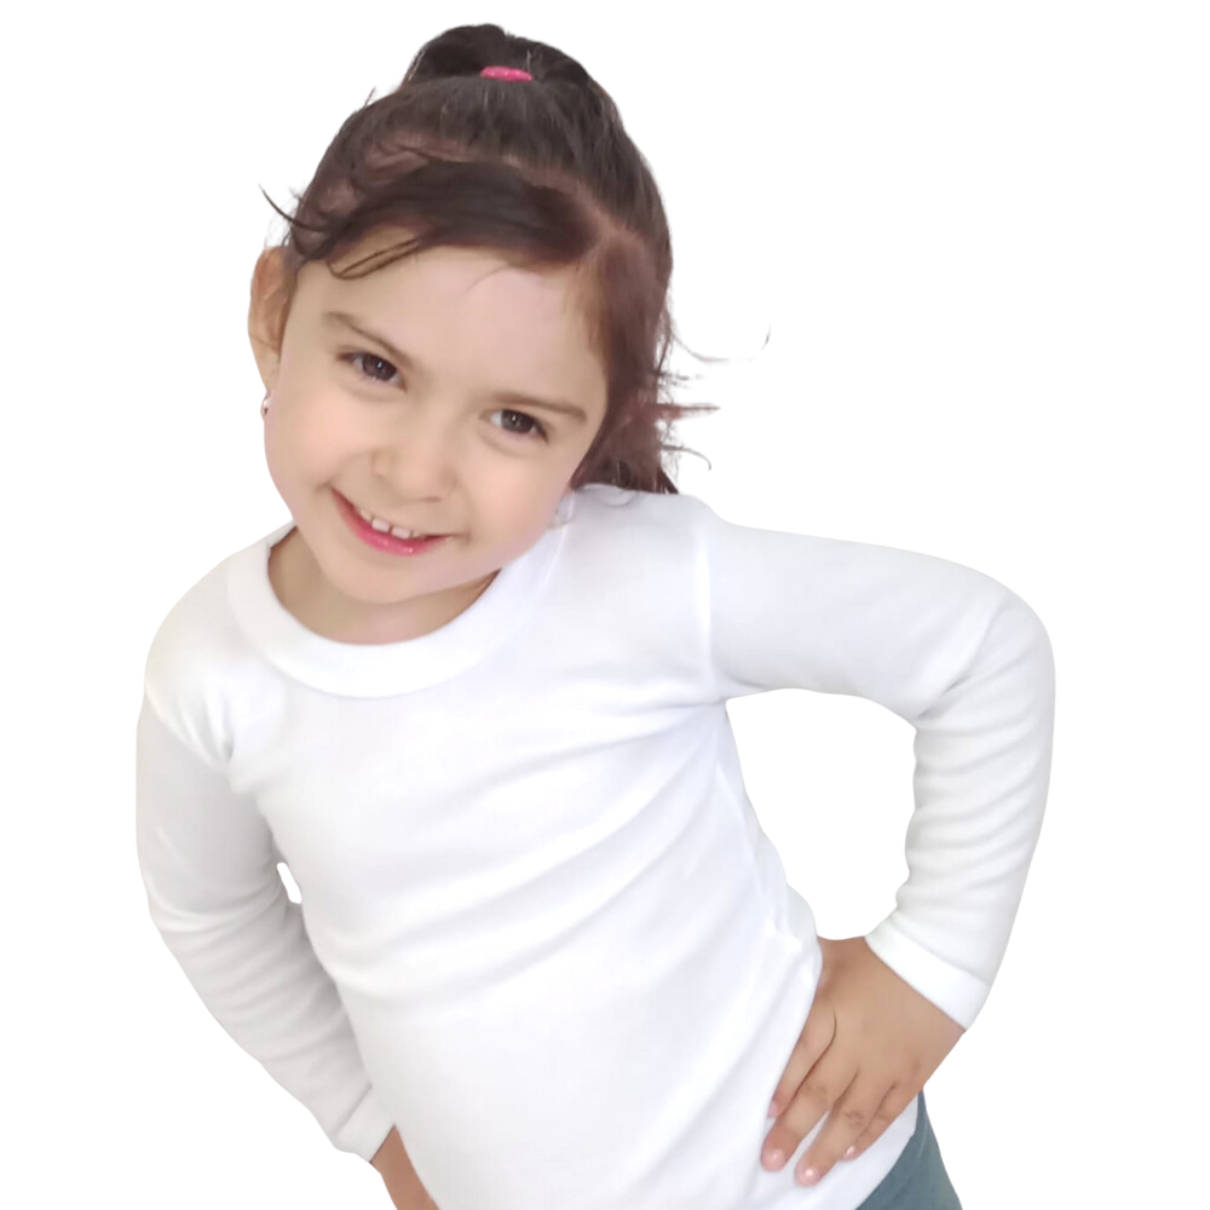 Calidad: Camisetas Blancas de Algodón Nacional Infantil | La Pascalle